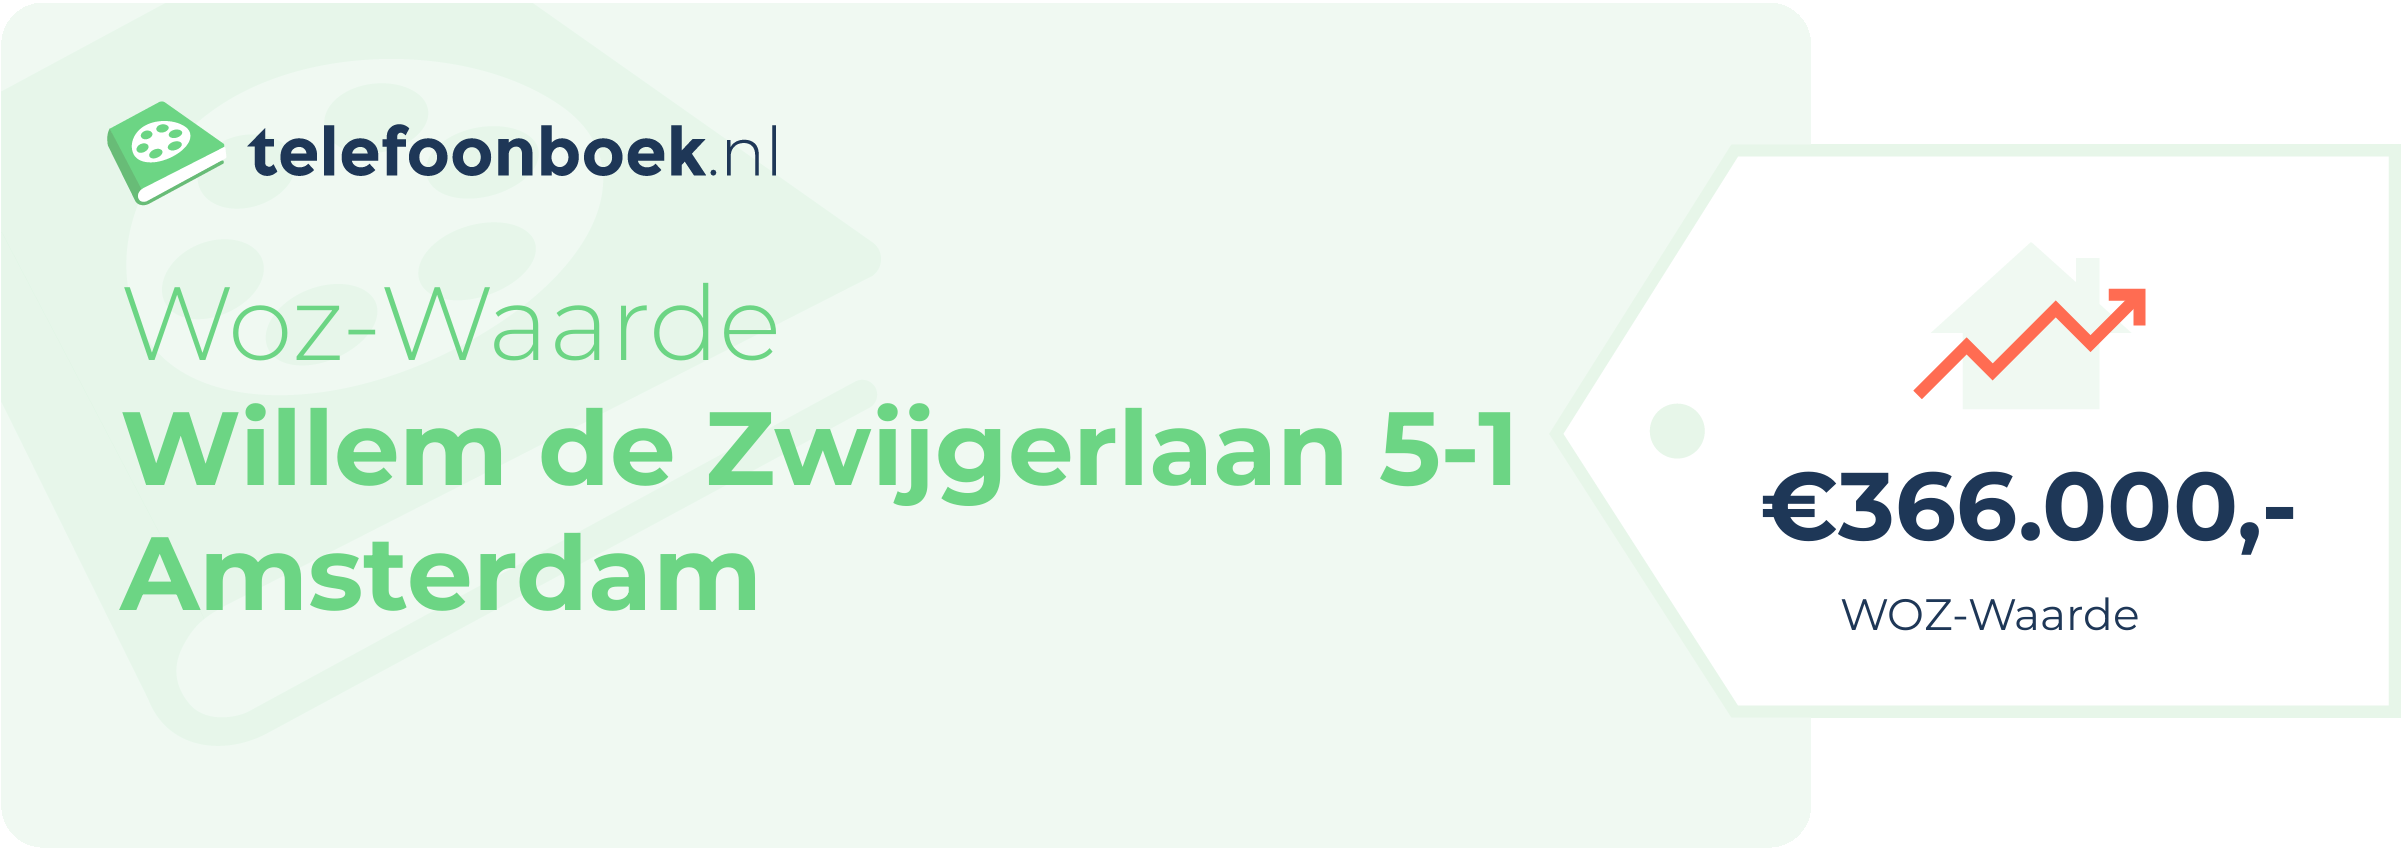 WOZ-waarde Willem De Zwijgerlaan 5-1 Amsterdam